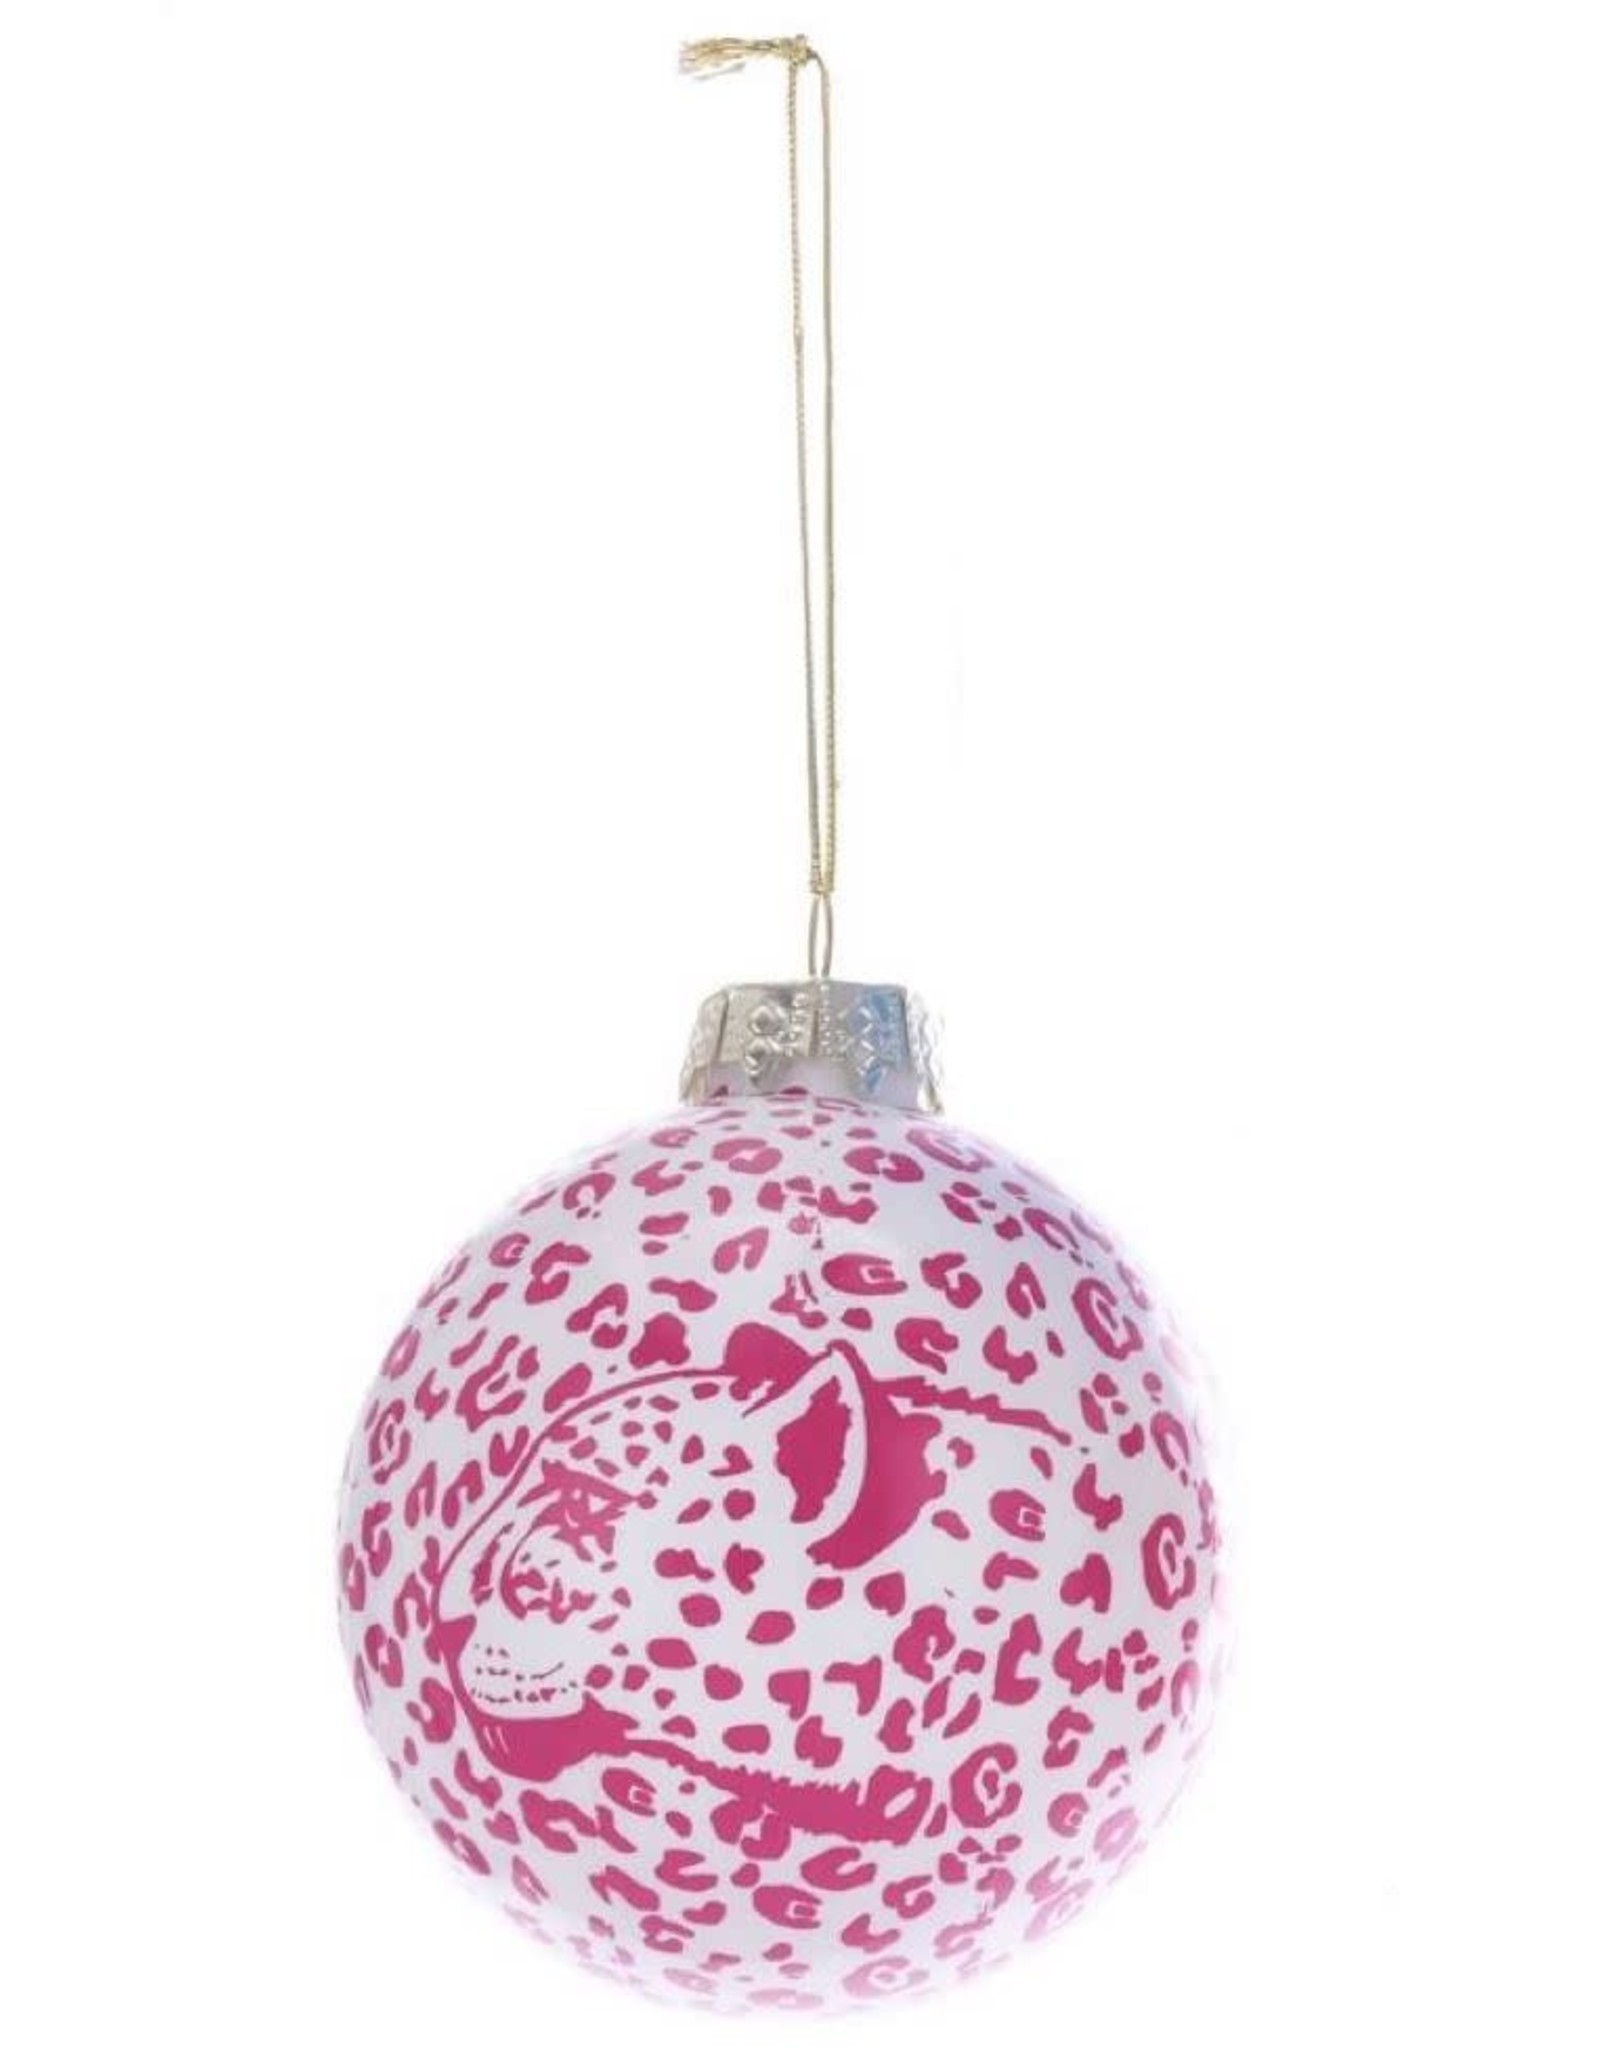 Kurt Adler Glass Ball Christmas Ornaments 80mm - Leopard